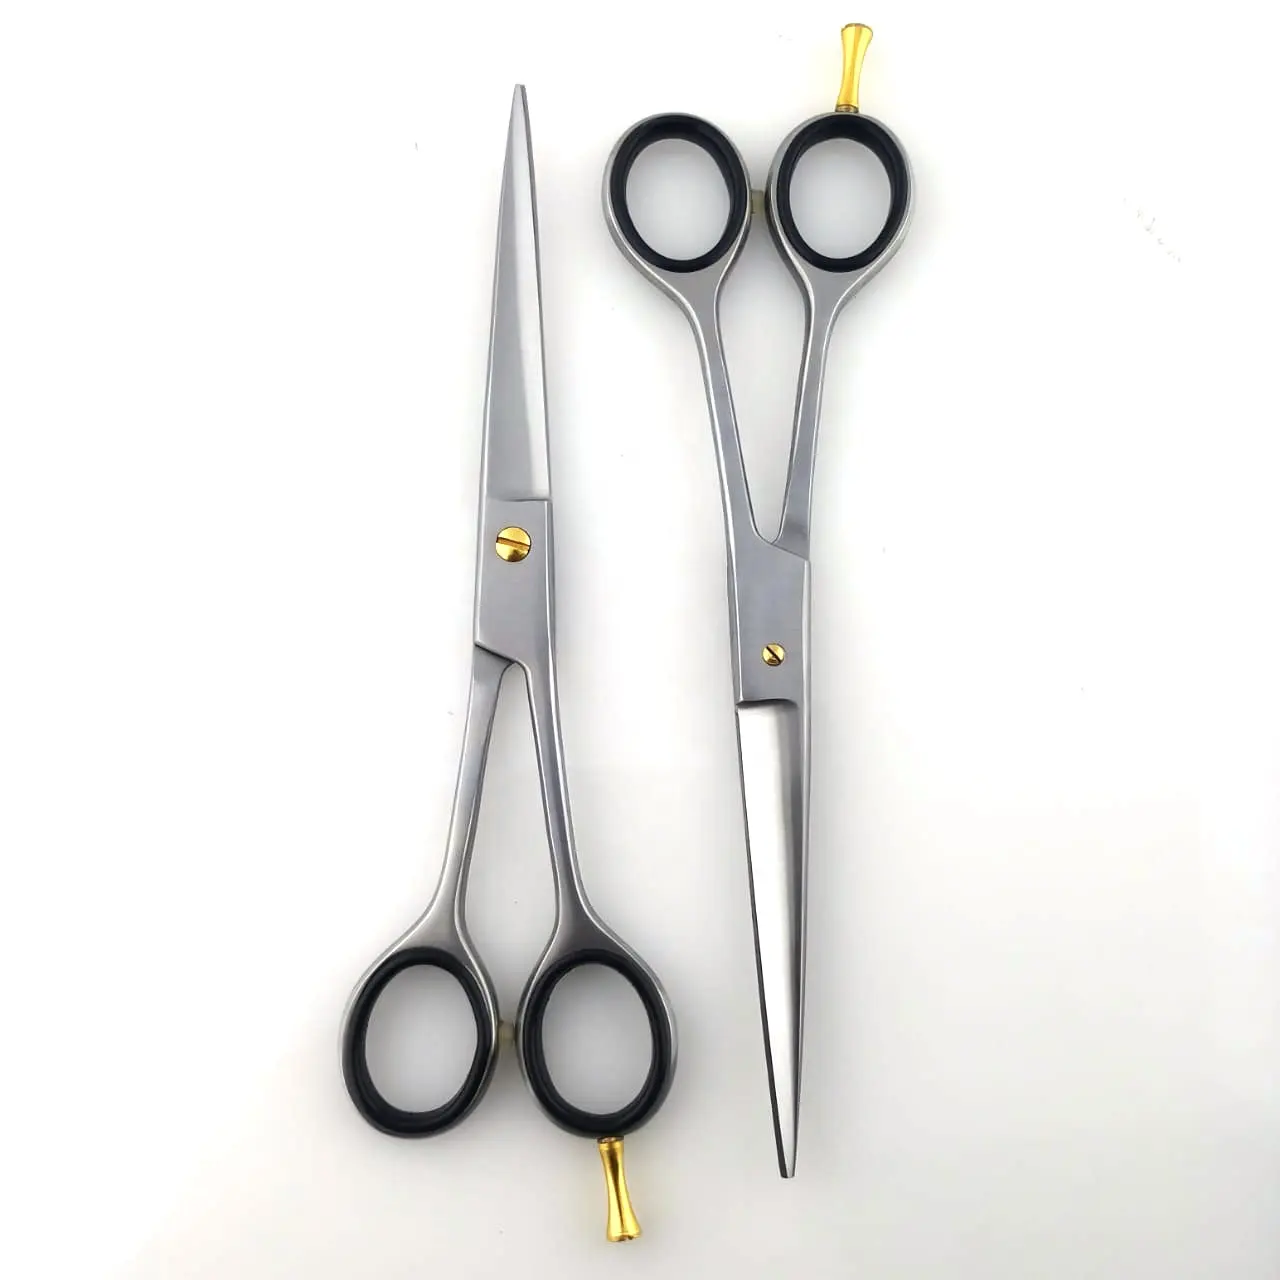 Ciseaux de barbier professionnels ciseaux à cheveux en acier inoxydable ciseaux de coiffure amincissants pour coiffeurs barbiers rasoir tranchant